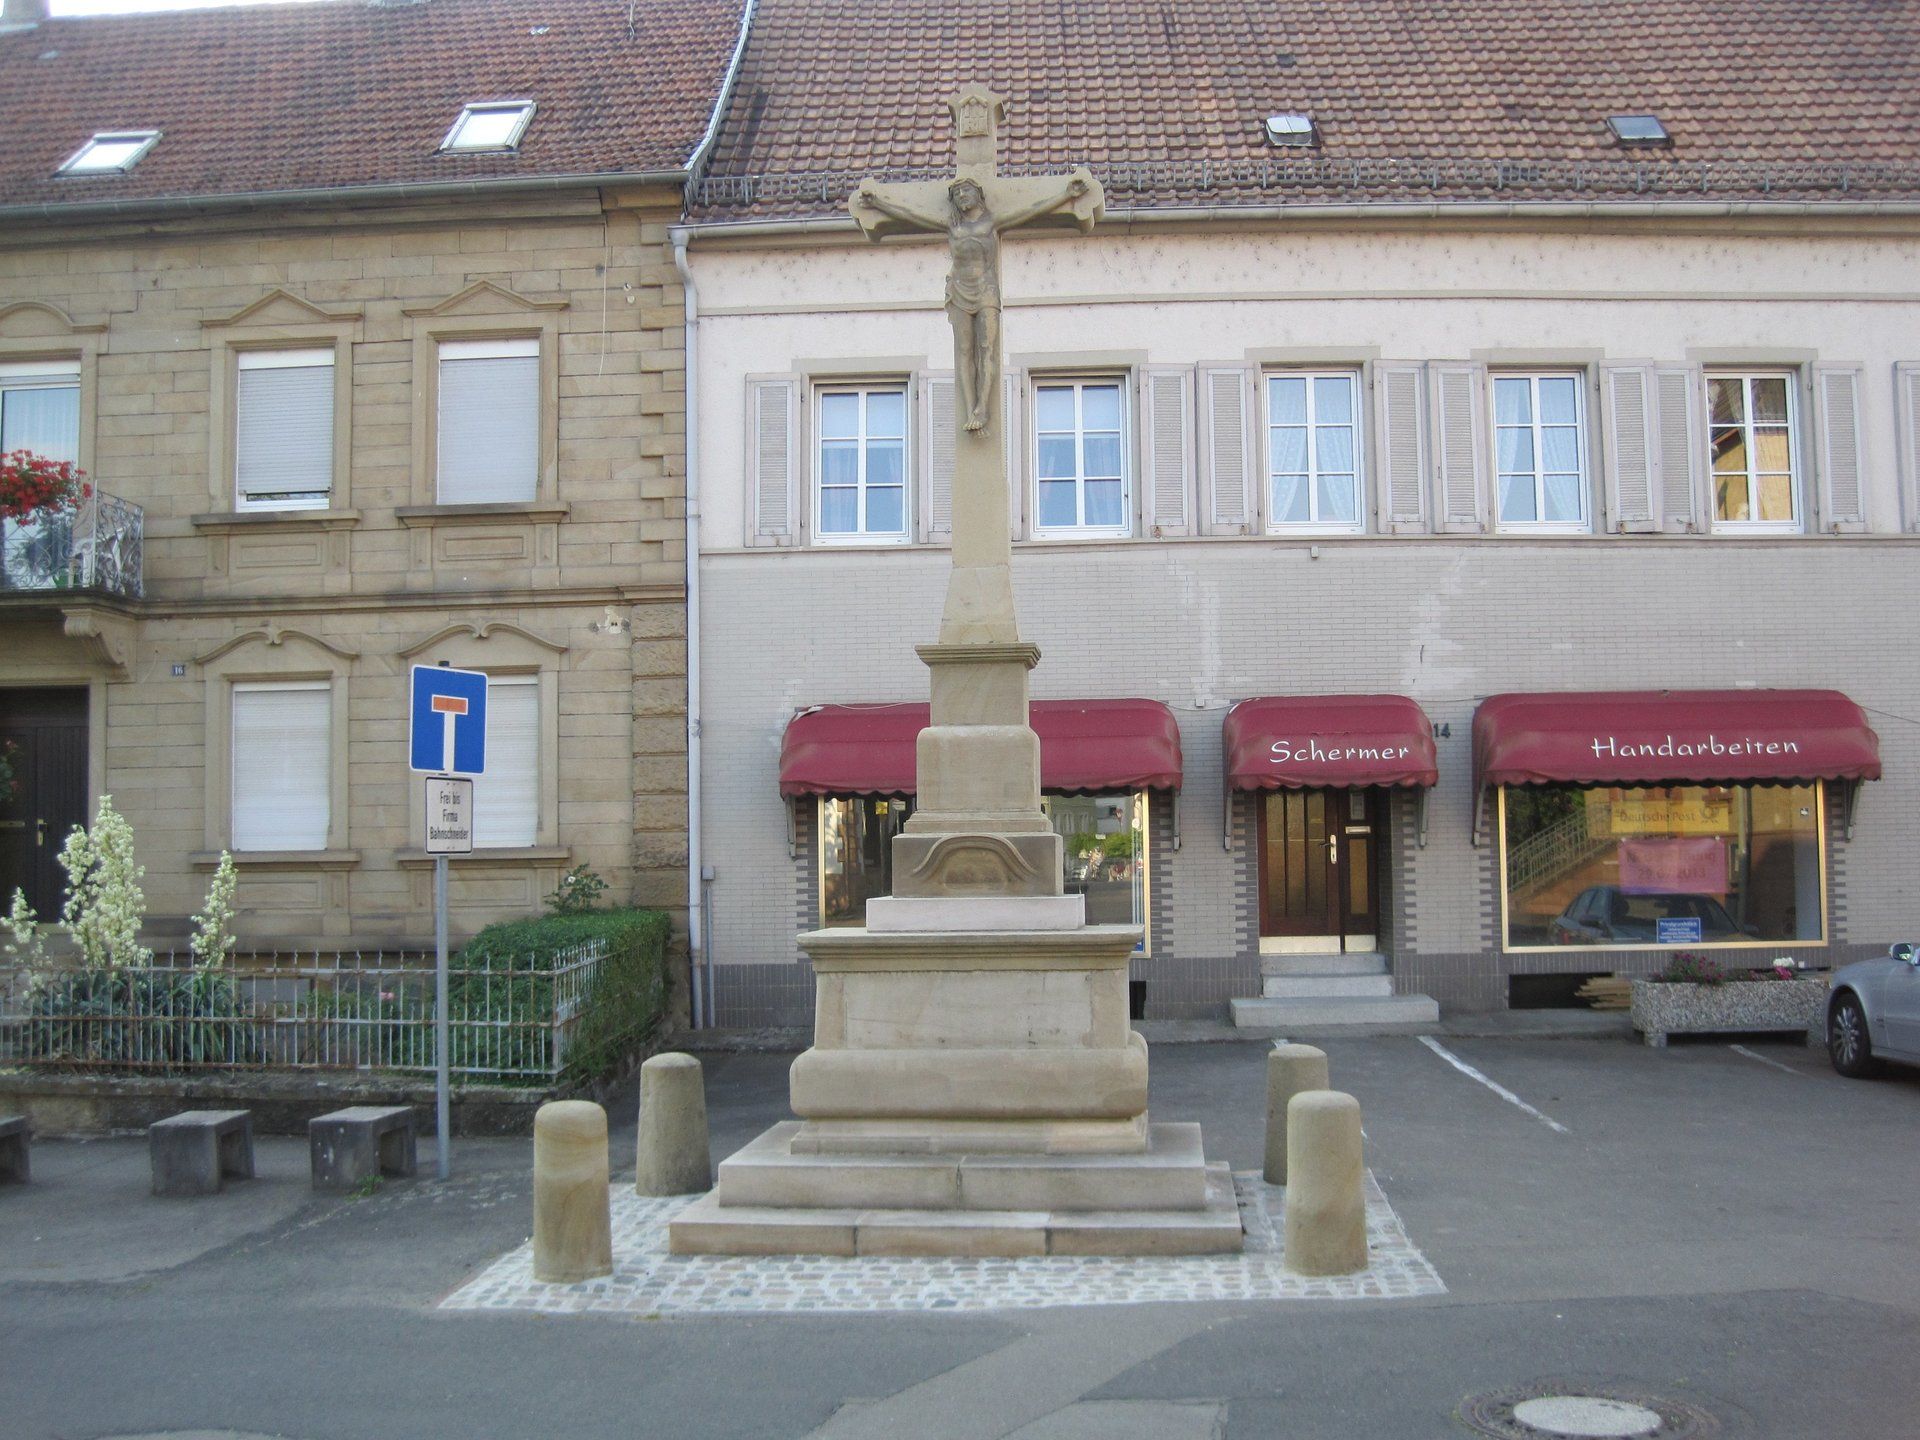 Pestkreuz in Lauterecken - Restaurierung und Wiederaufbau des 6m hohen Kreuzes in Lauterecken